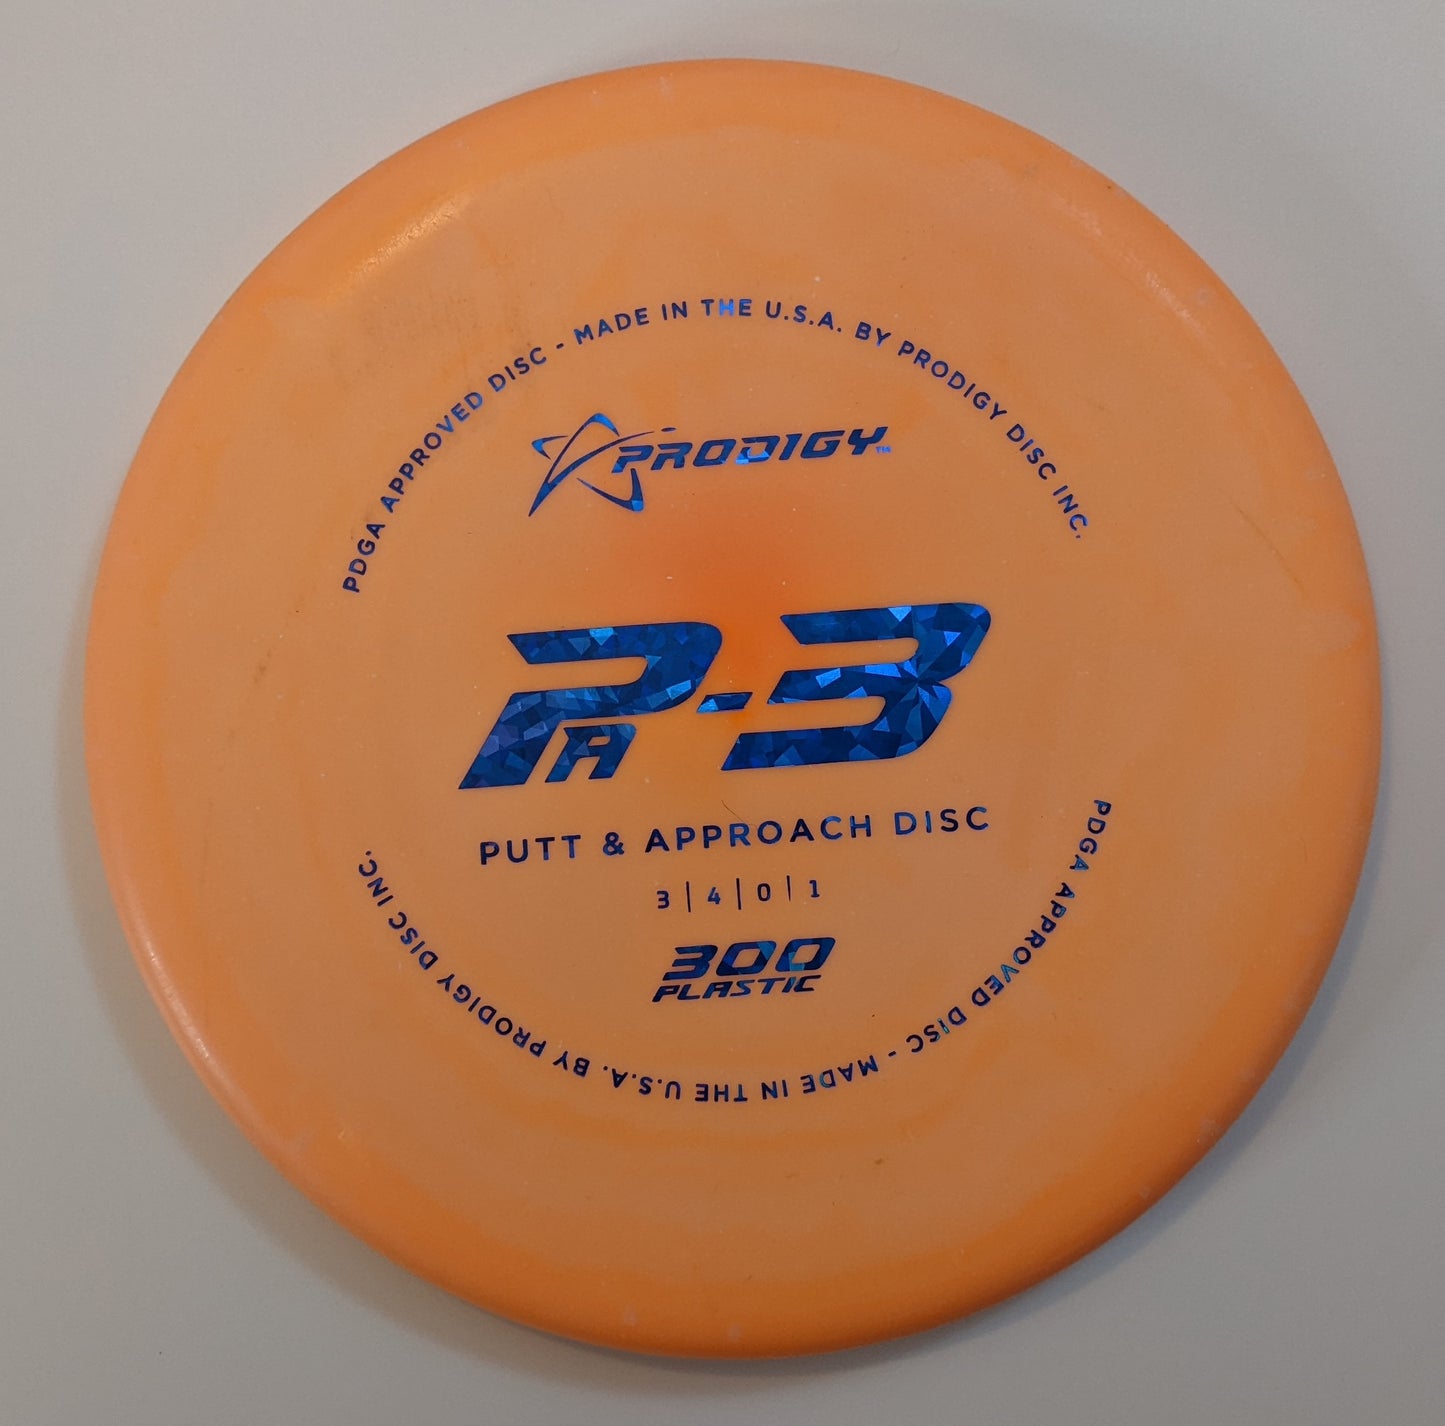 Prodigy PA-3 Putter (300 Plastic)